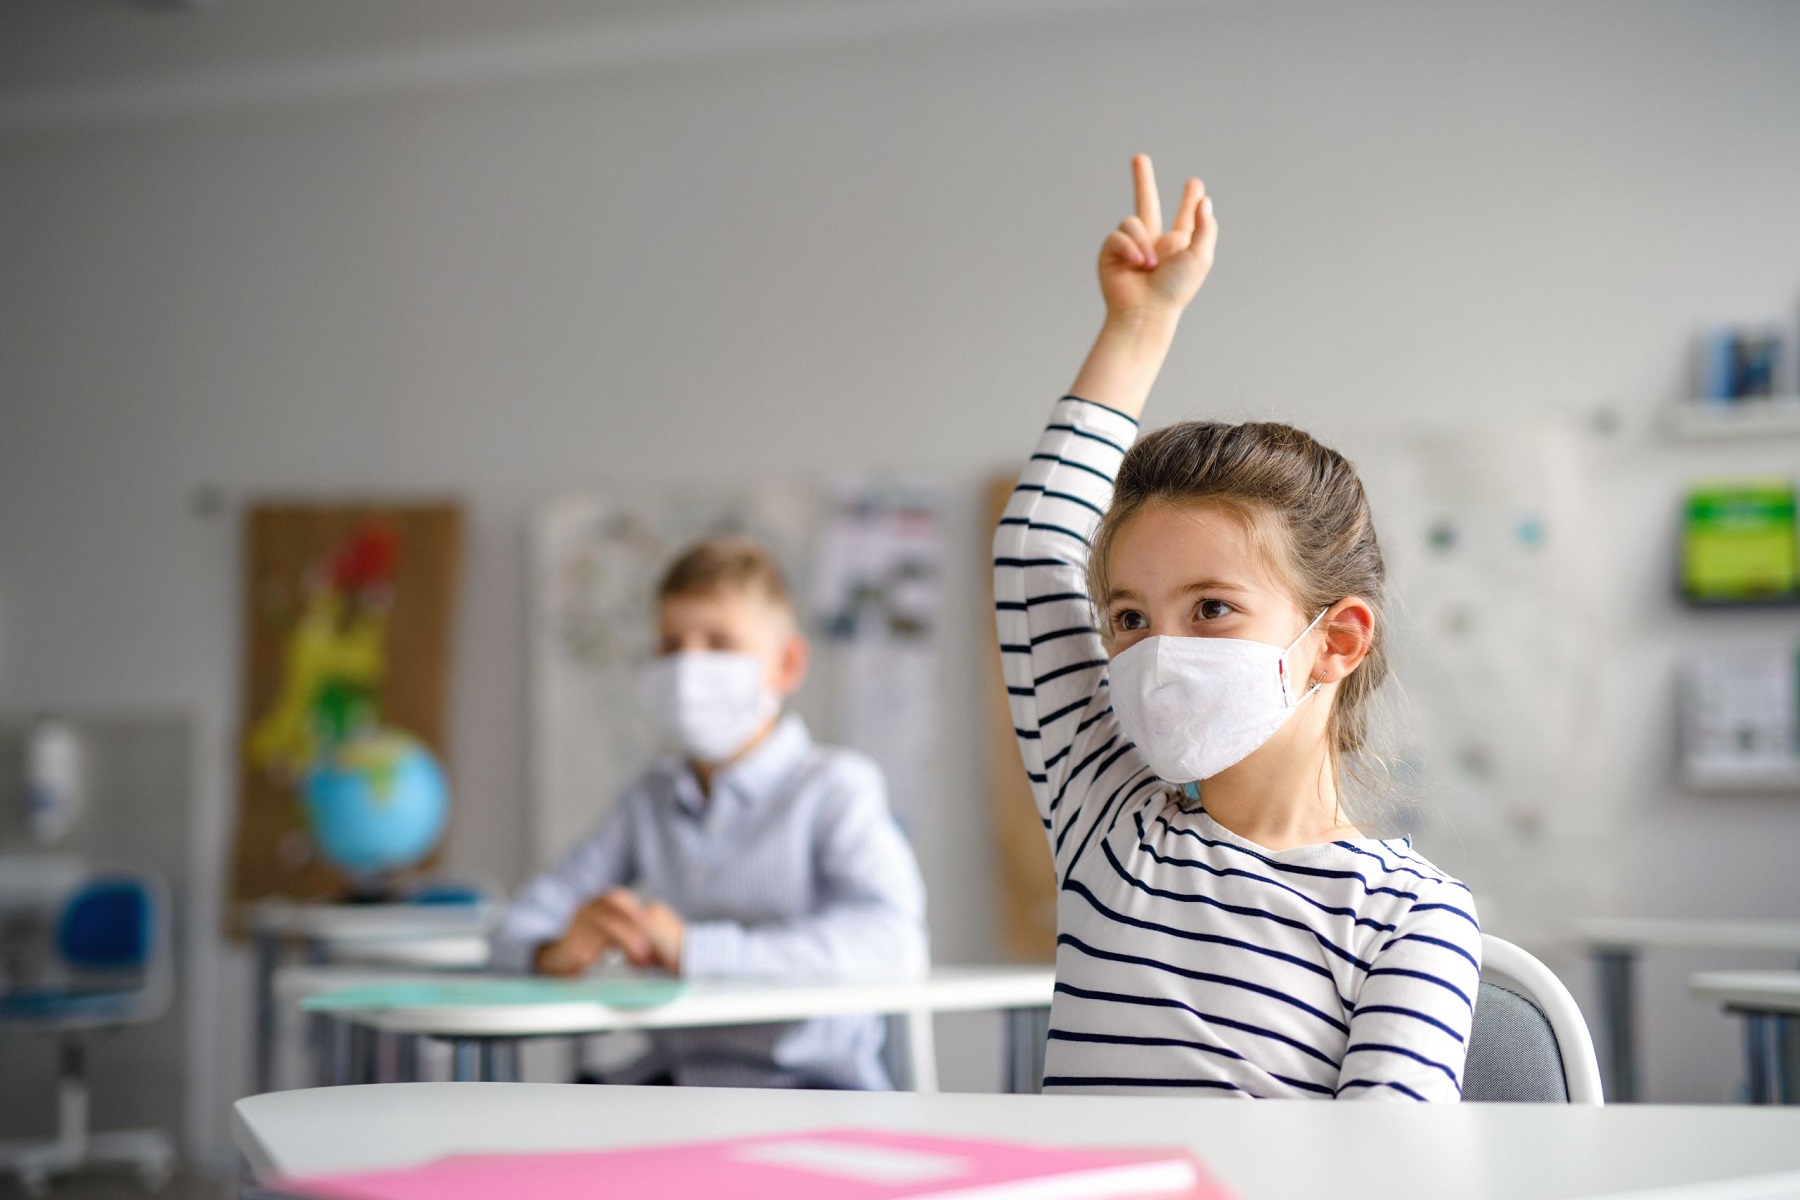 CDC Σχολεία Δημοτικά: Απαίτηση μασκών για εκπαιδευτικούς και εξαερισμός για τη μείωση του κινδύνου covid